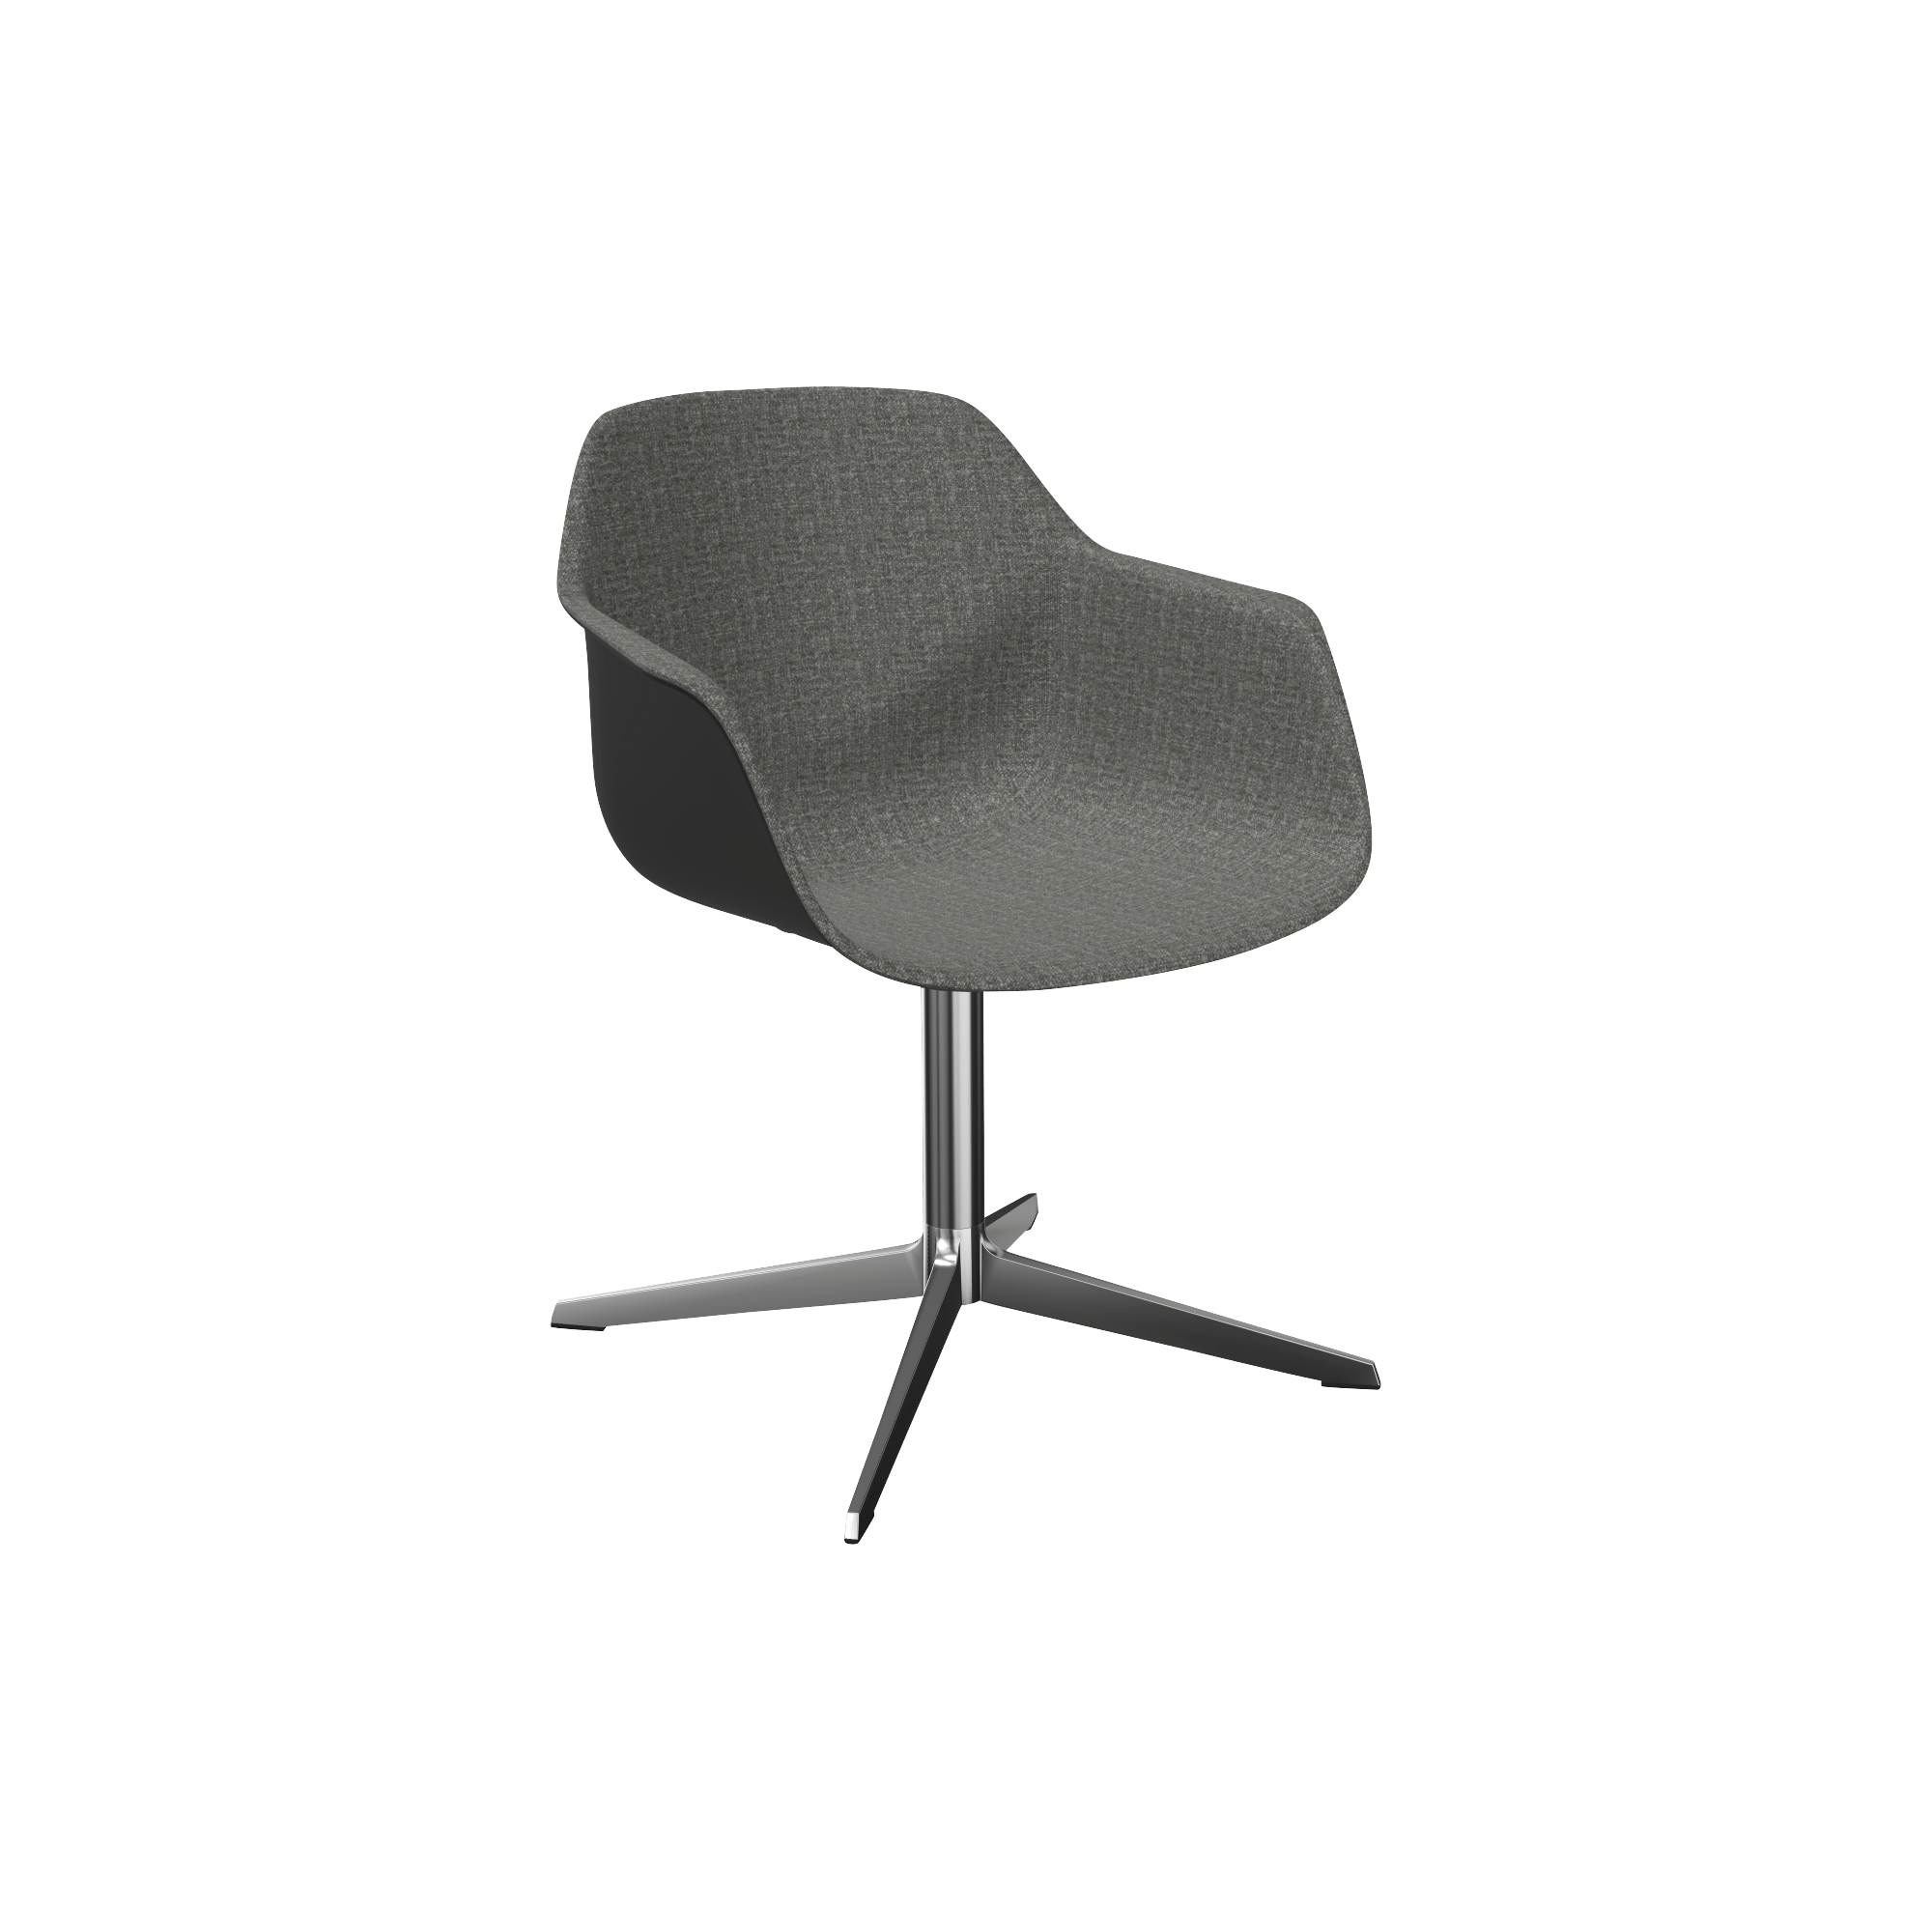 A grey swivel chair